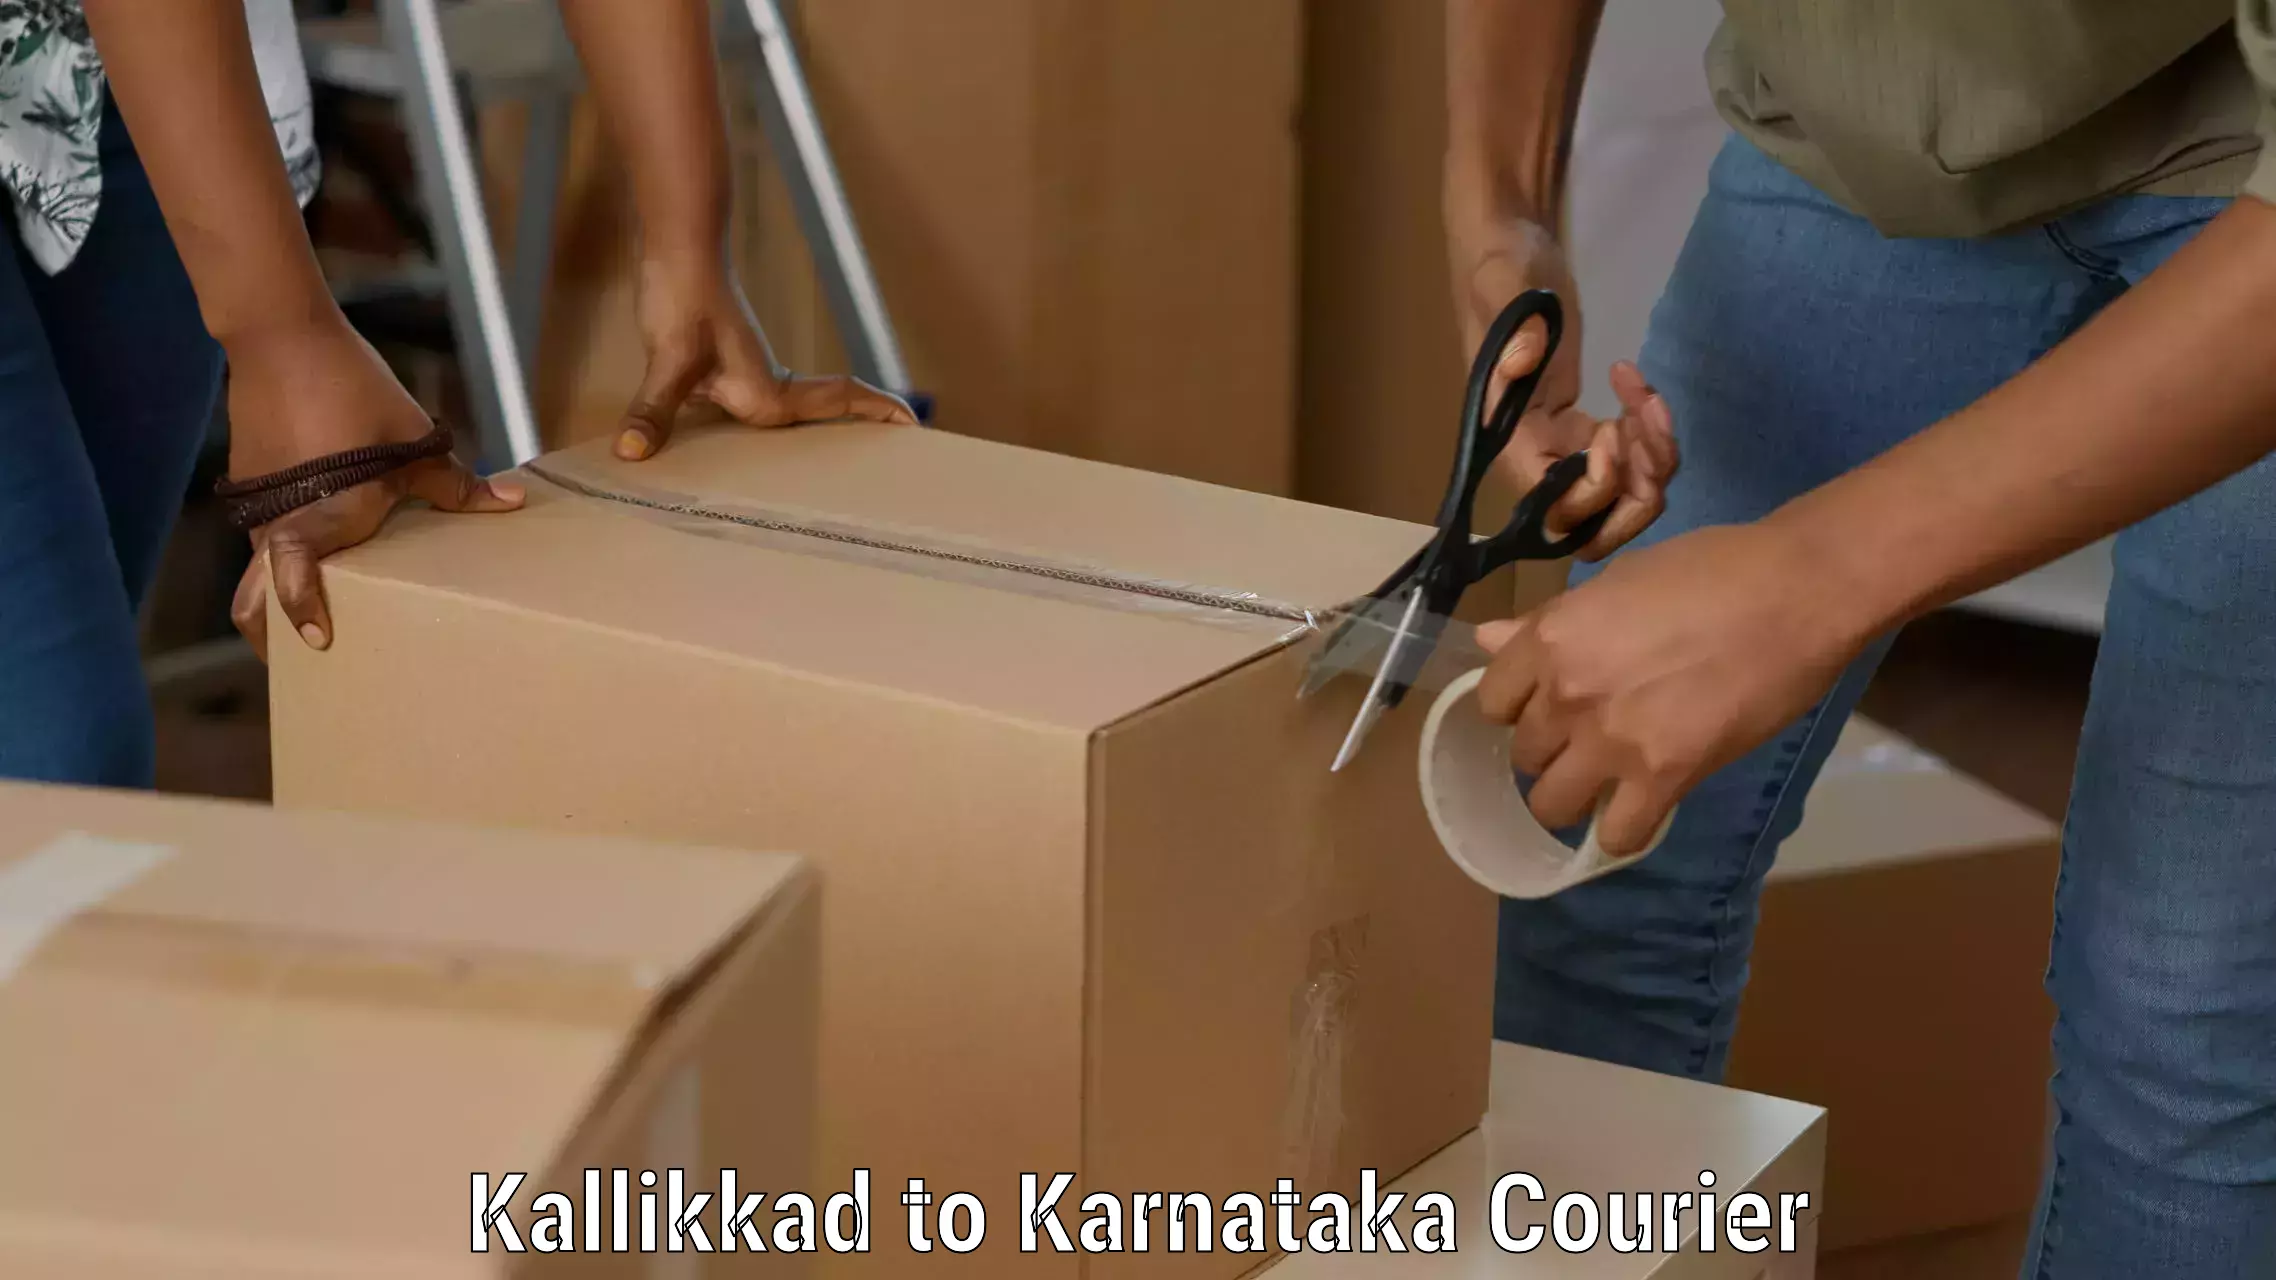 Customer-friendly courier services Kallikkad to Karnataka